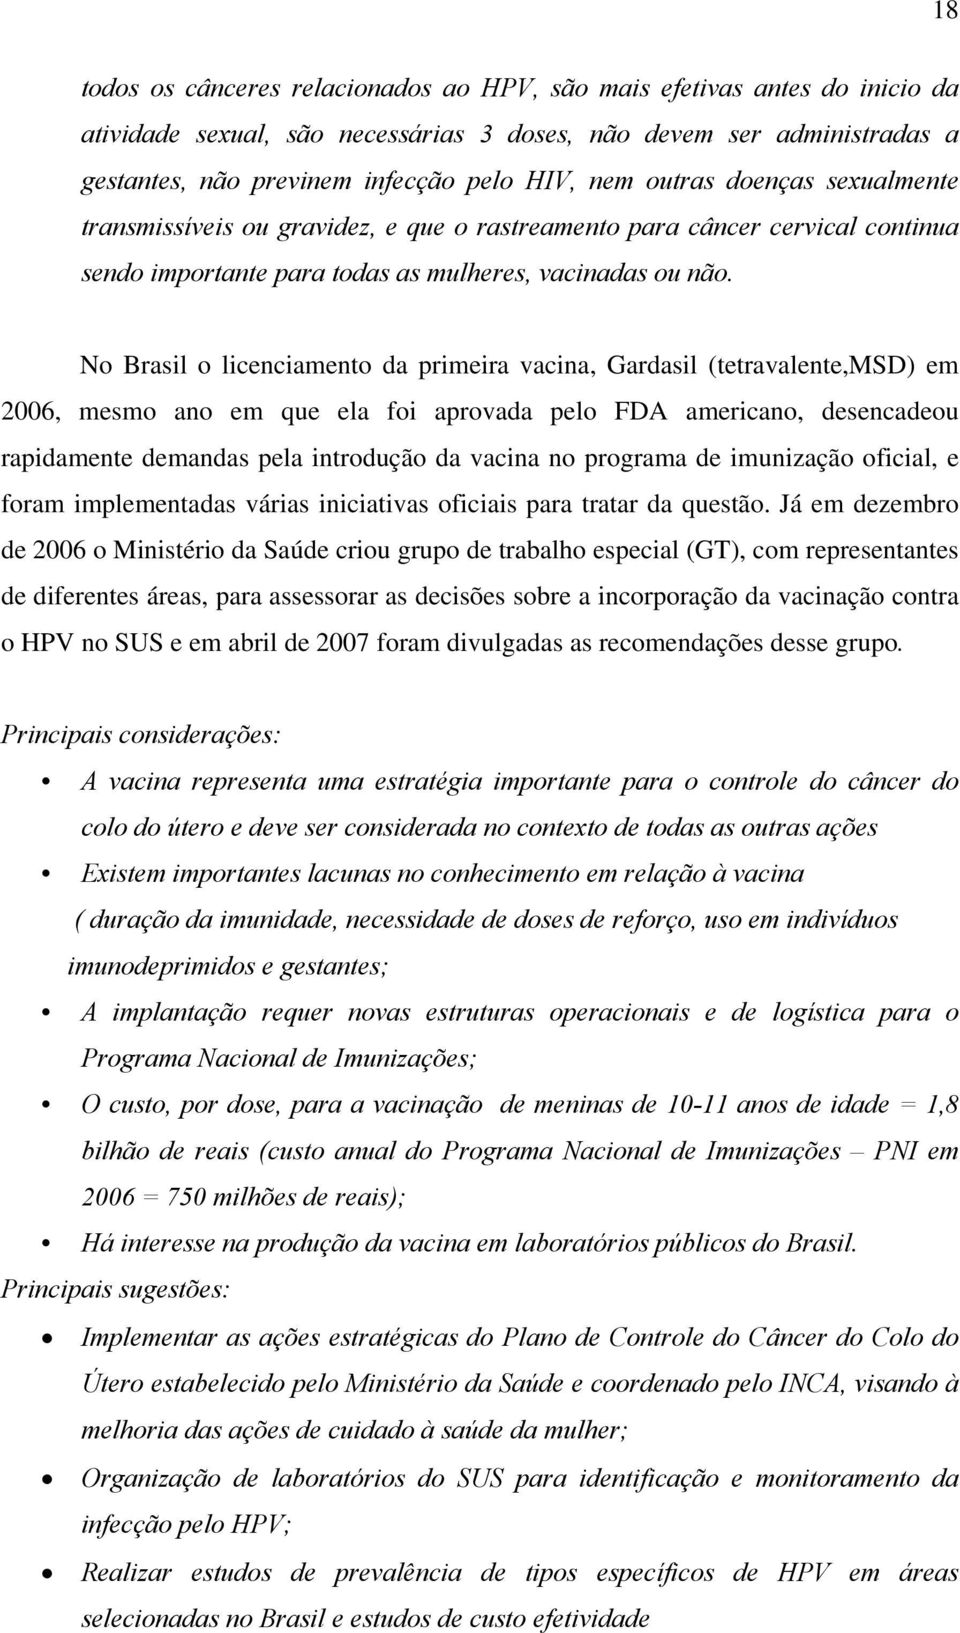 No Brasil o licenciamento da primeira vacina, Gardasil (tetravalente,msd) em 2006, mesmo ano em que ela foi aprovada pelo FDA americano, desencadeou rapidamente demandas pela introdução da vacina no